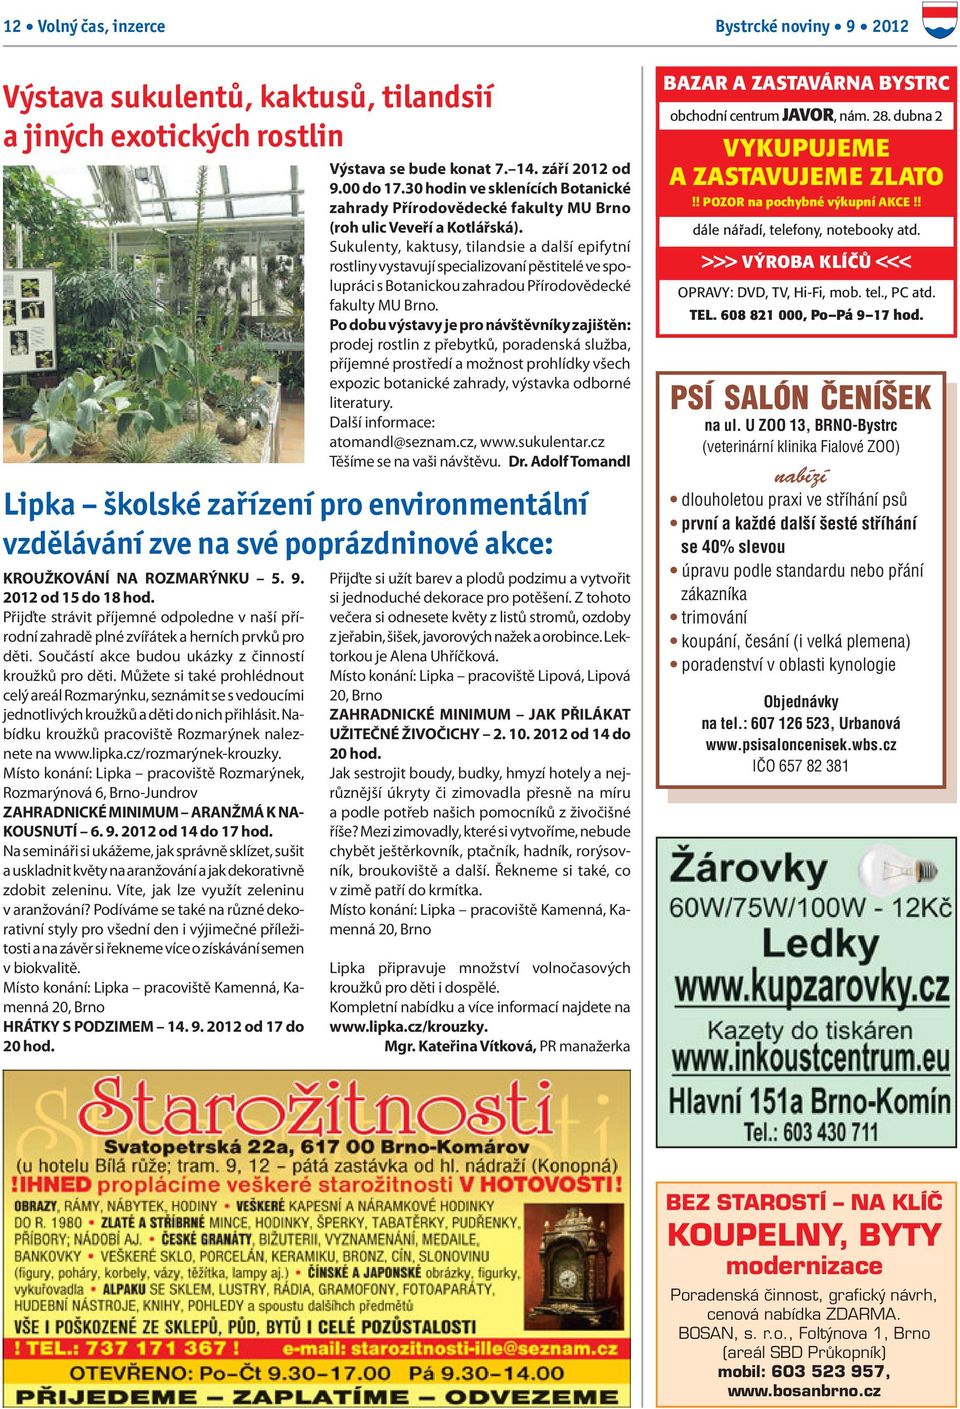 Sukulenty, kaktusy, tilandsie a další epifytní rostliny vystavují specializovaní pěstitelé ve spolupráci s Botanickou zahradou Přírodovědecké fakulty MU Brno.